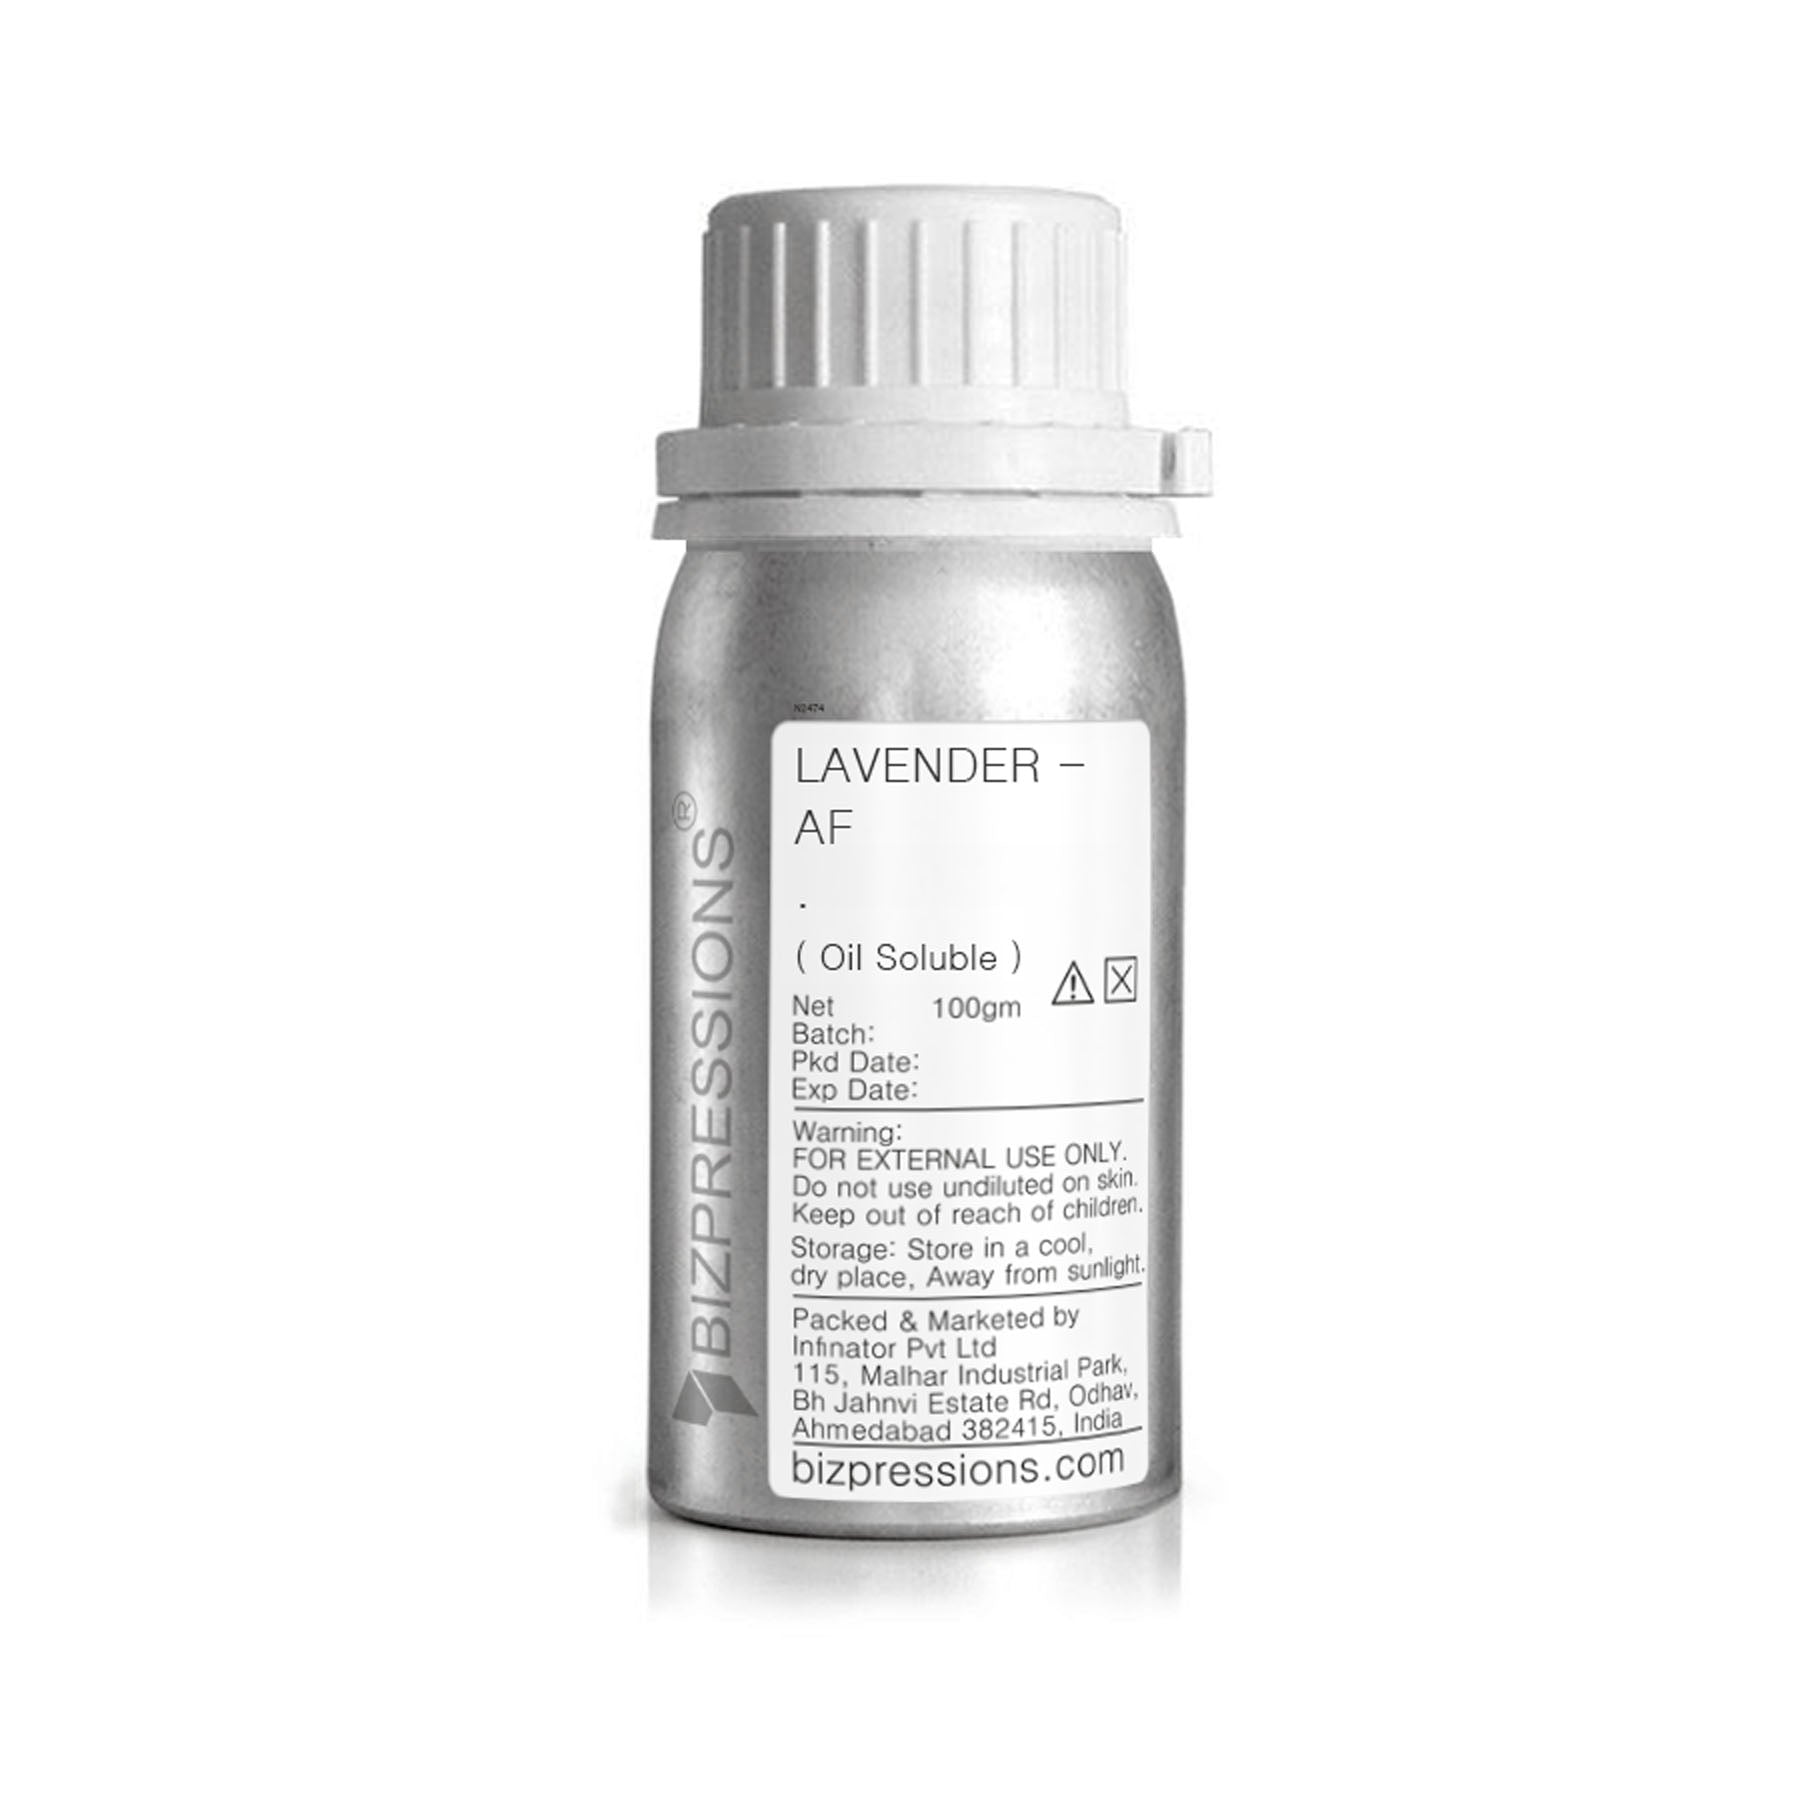 LAVENDER - AF - Fragrance ( Oil Soluble ) - 100 gm